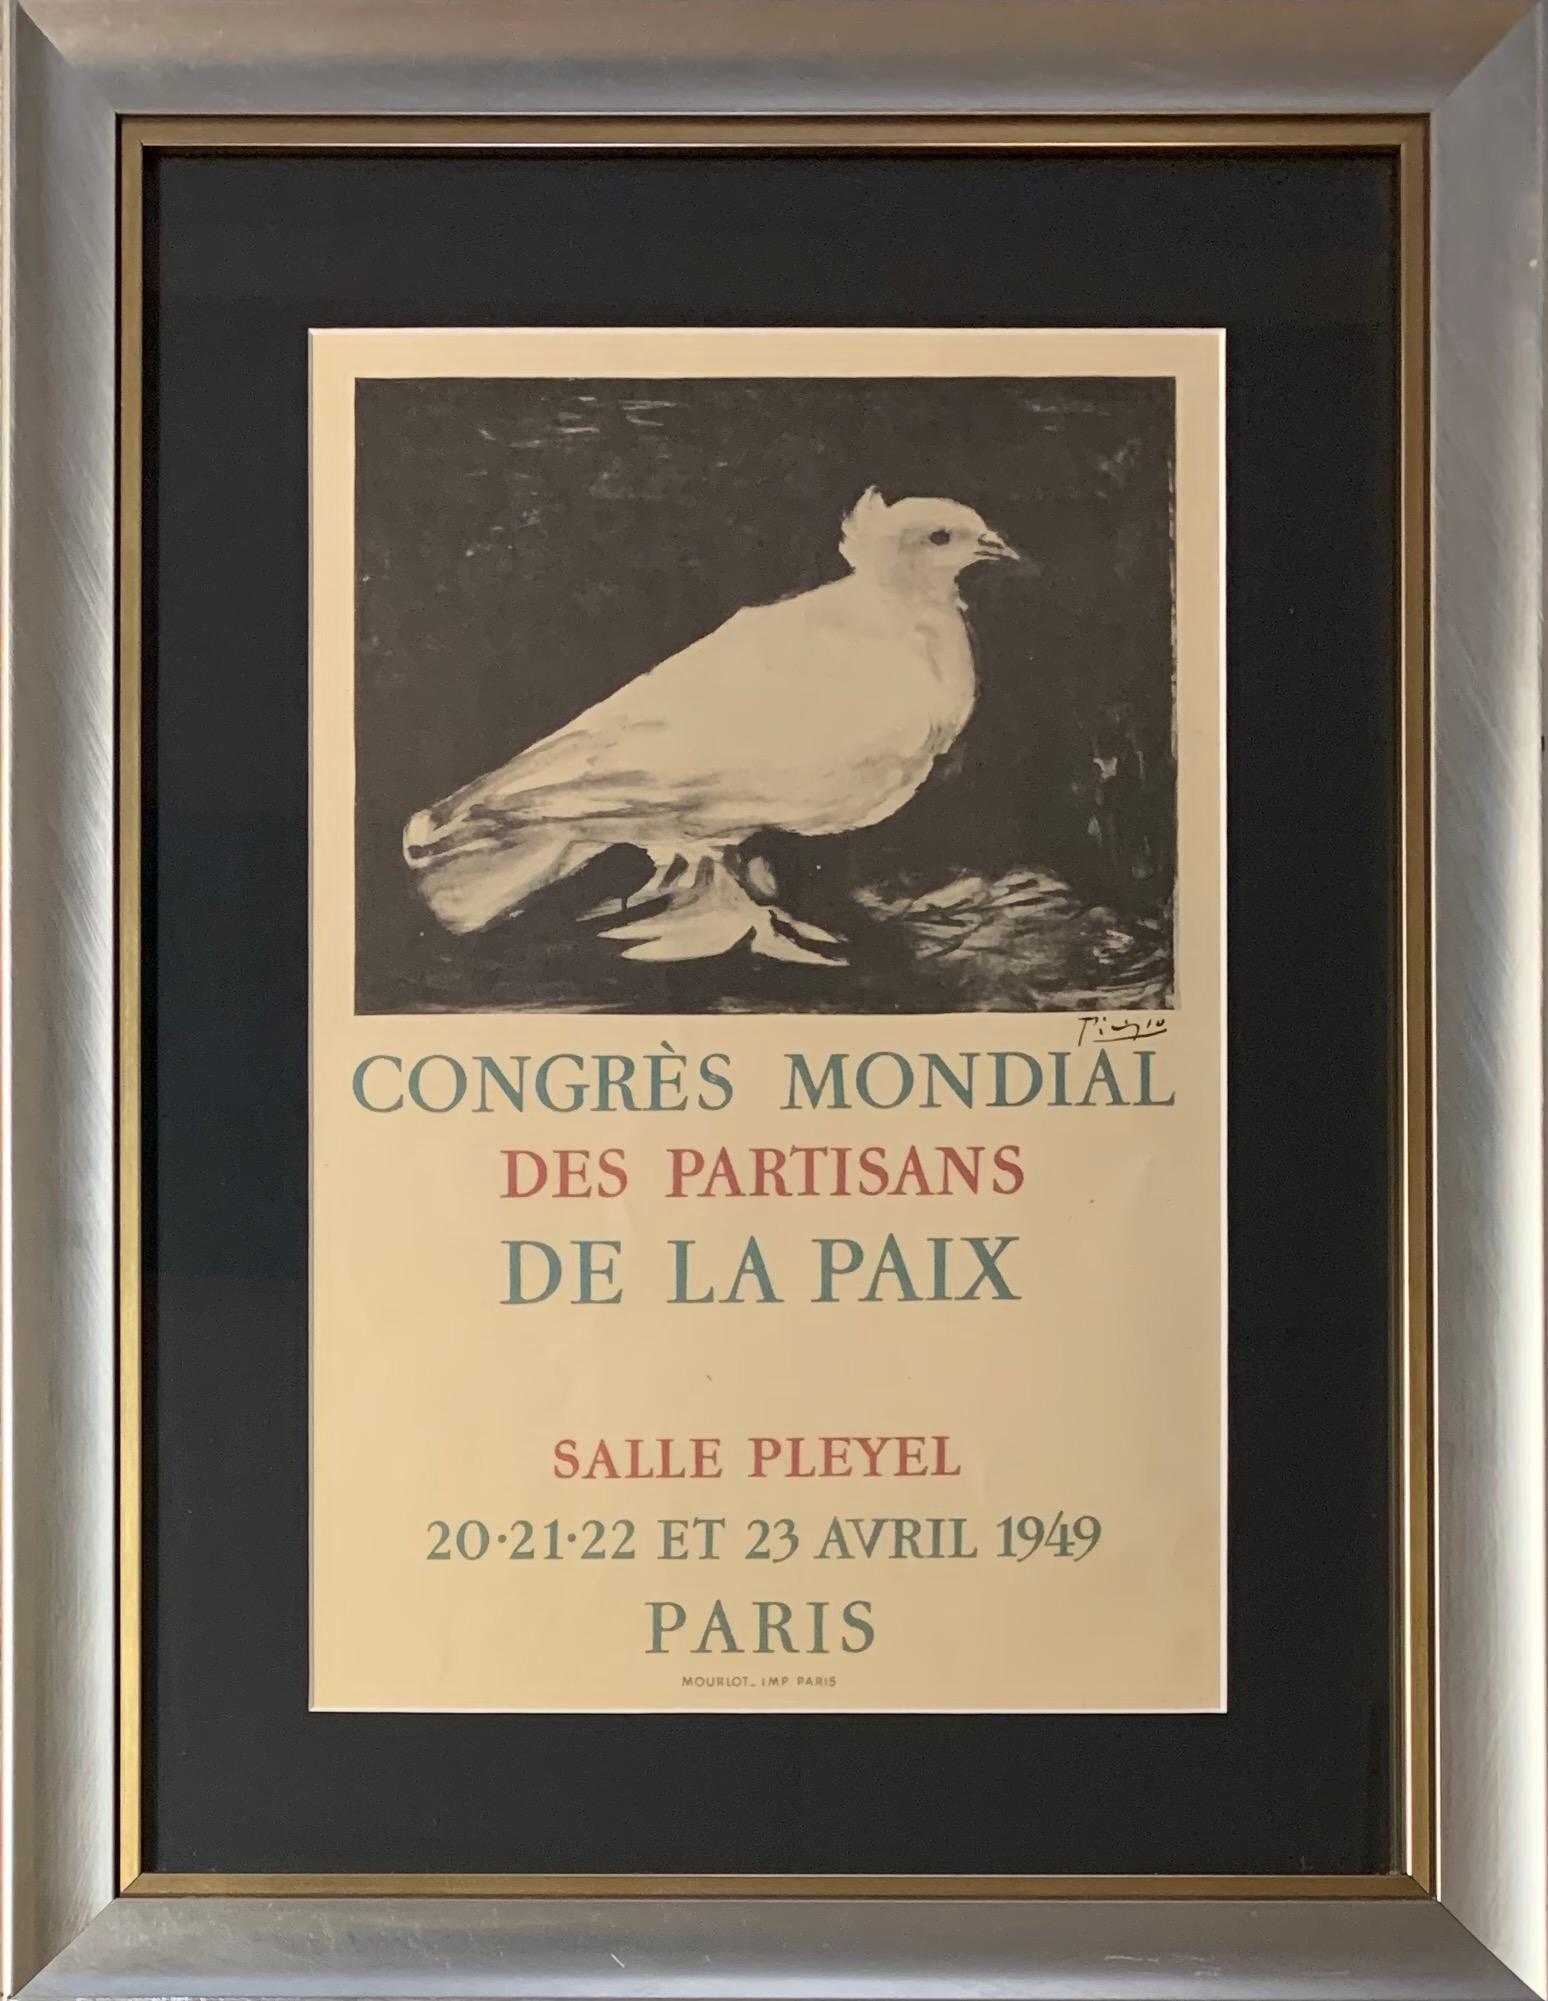 Pablo Picasso Animal Print - Congrès mondial des partisans de la paix, Lithograph Poster 1949